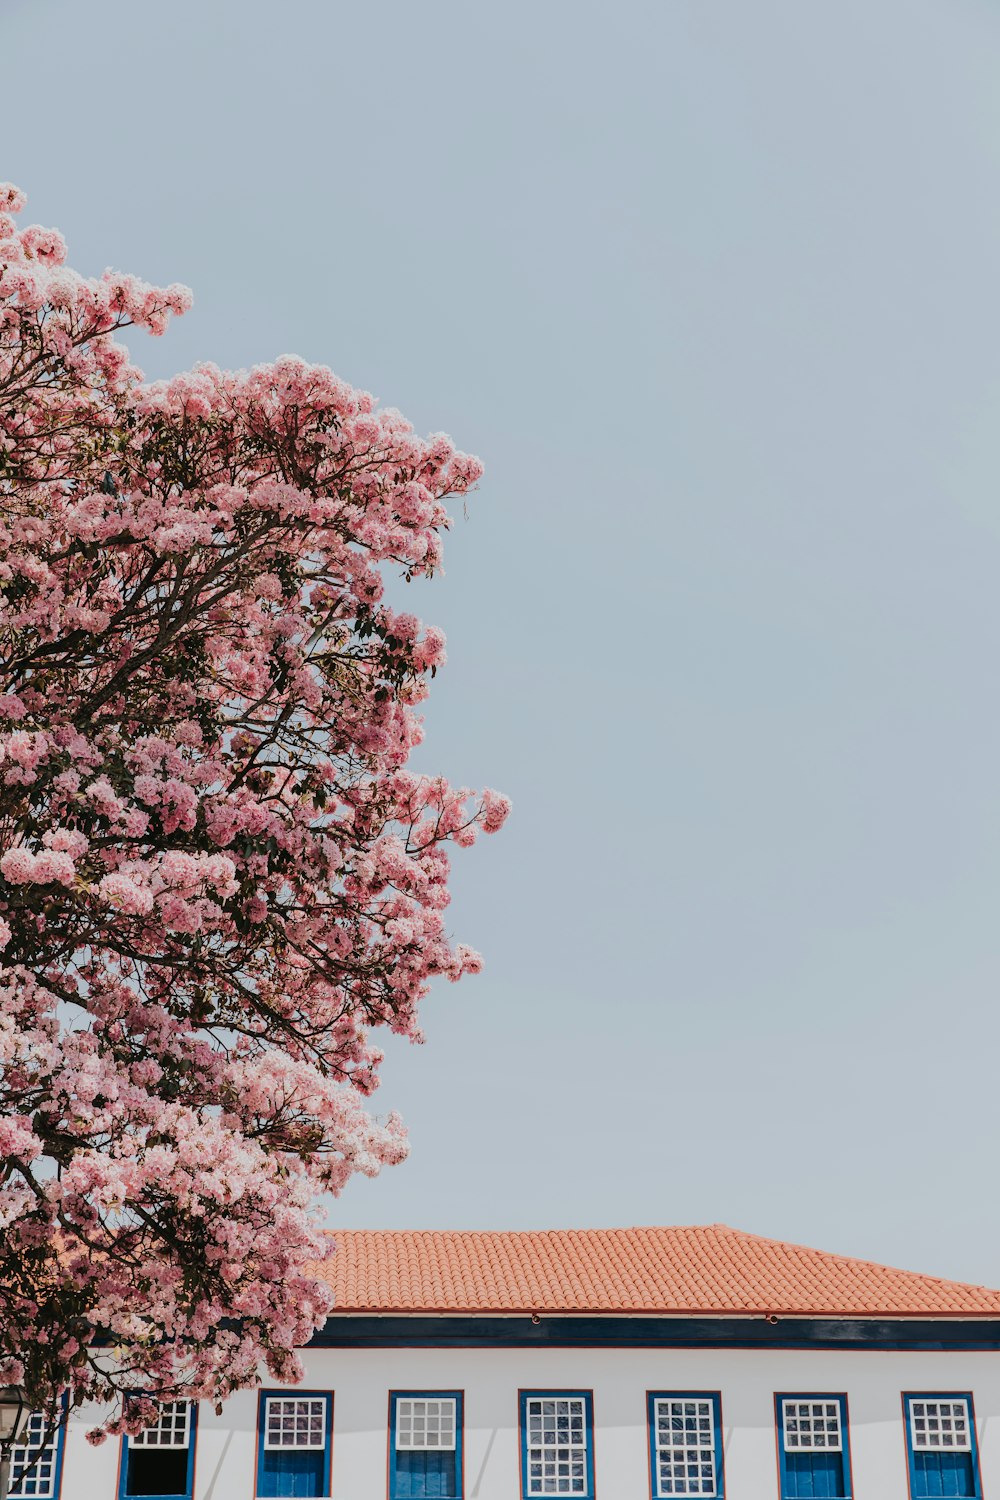 Un arbre aux fleurs roses devant un bâtiment